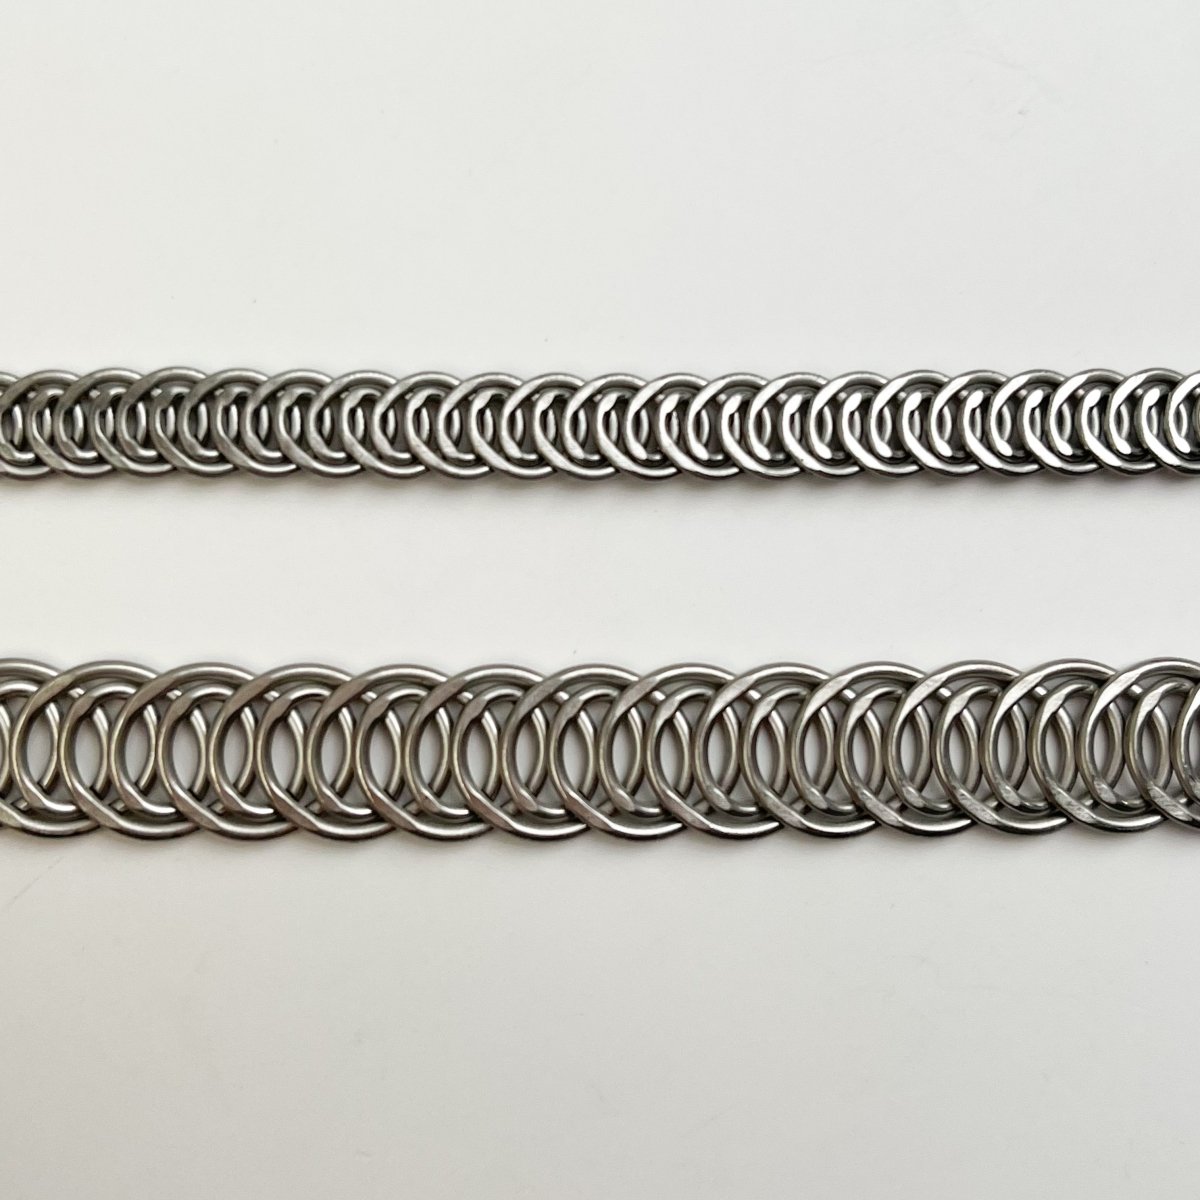 Spiral Steel Boning Roll  - 6mm or 10mm wide